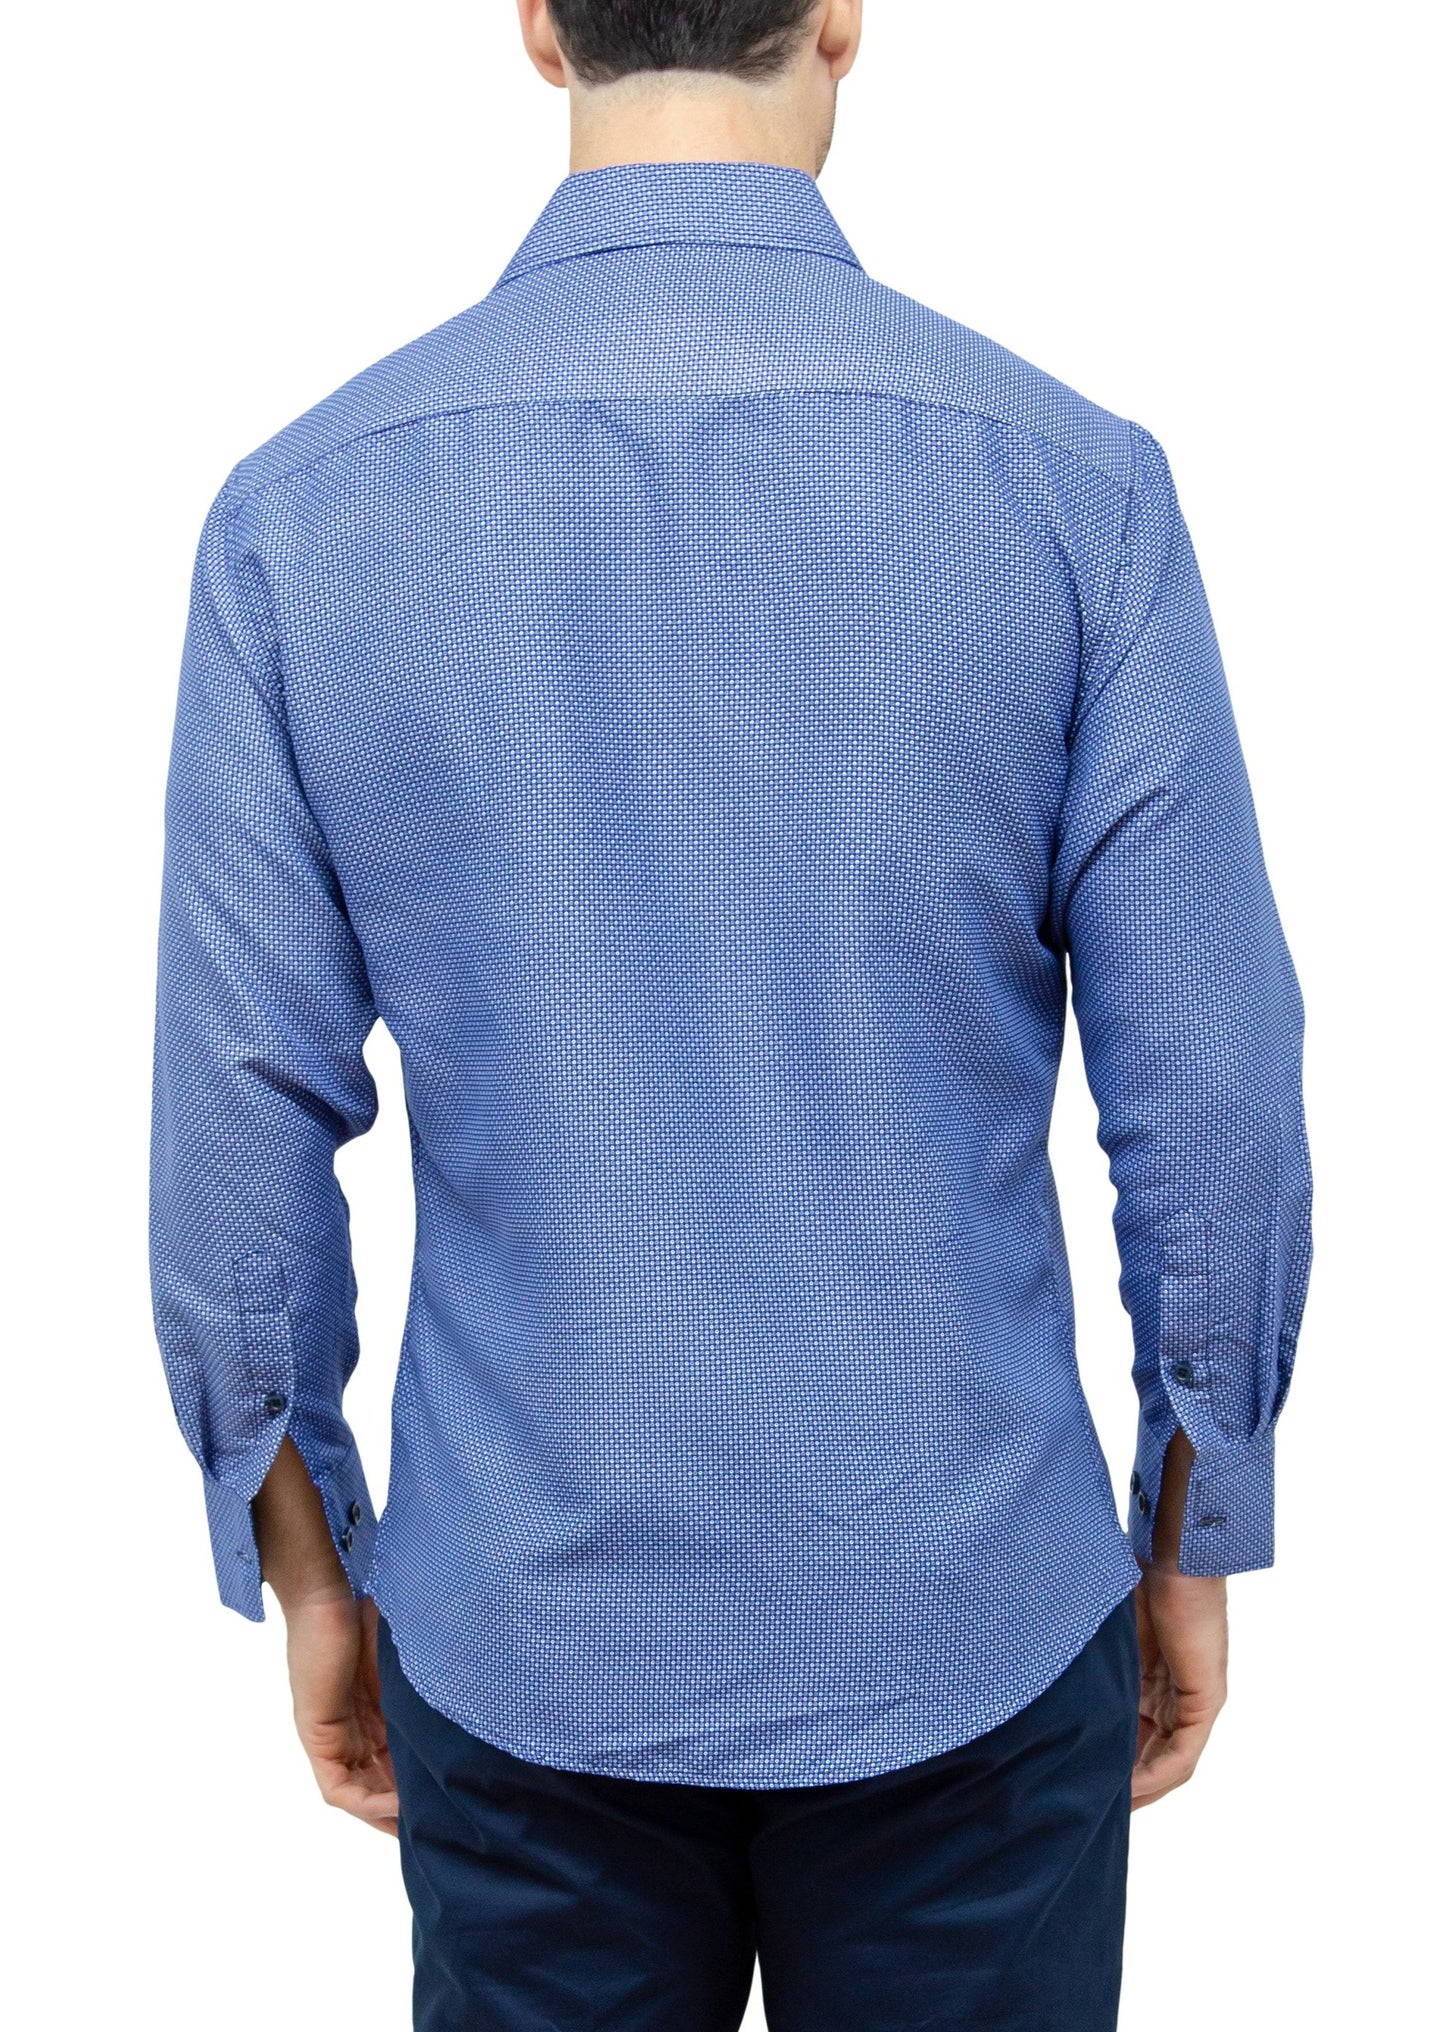 182360-navy-button-up-long-sleeve-dress-shirt